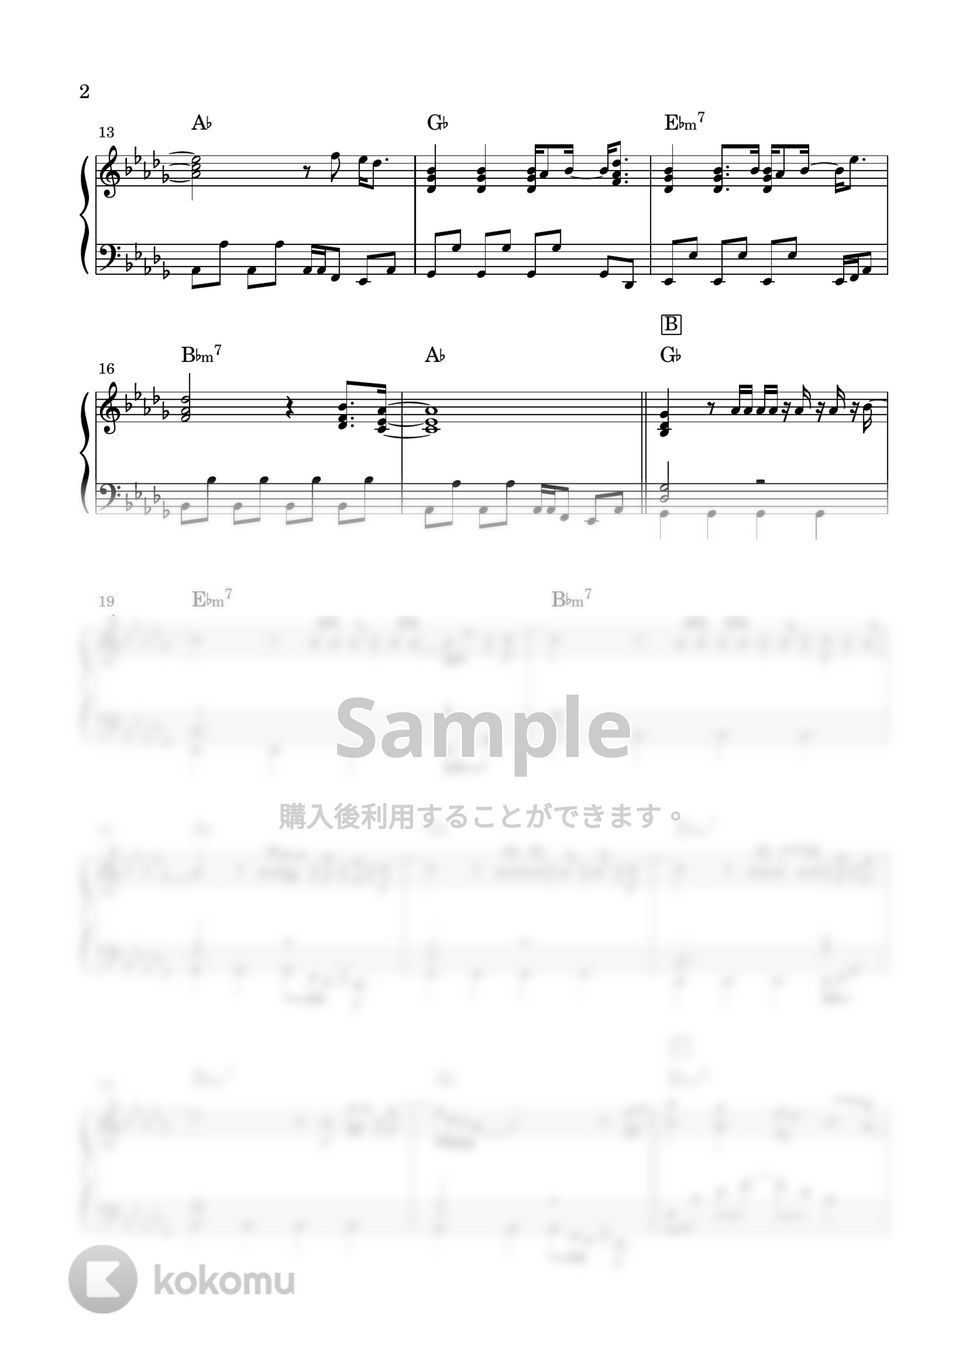 perfume - Moon (ばらかもん 主題歌) by miiの楽譜棚